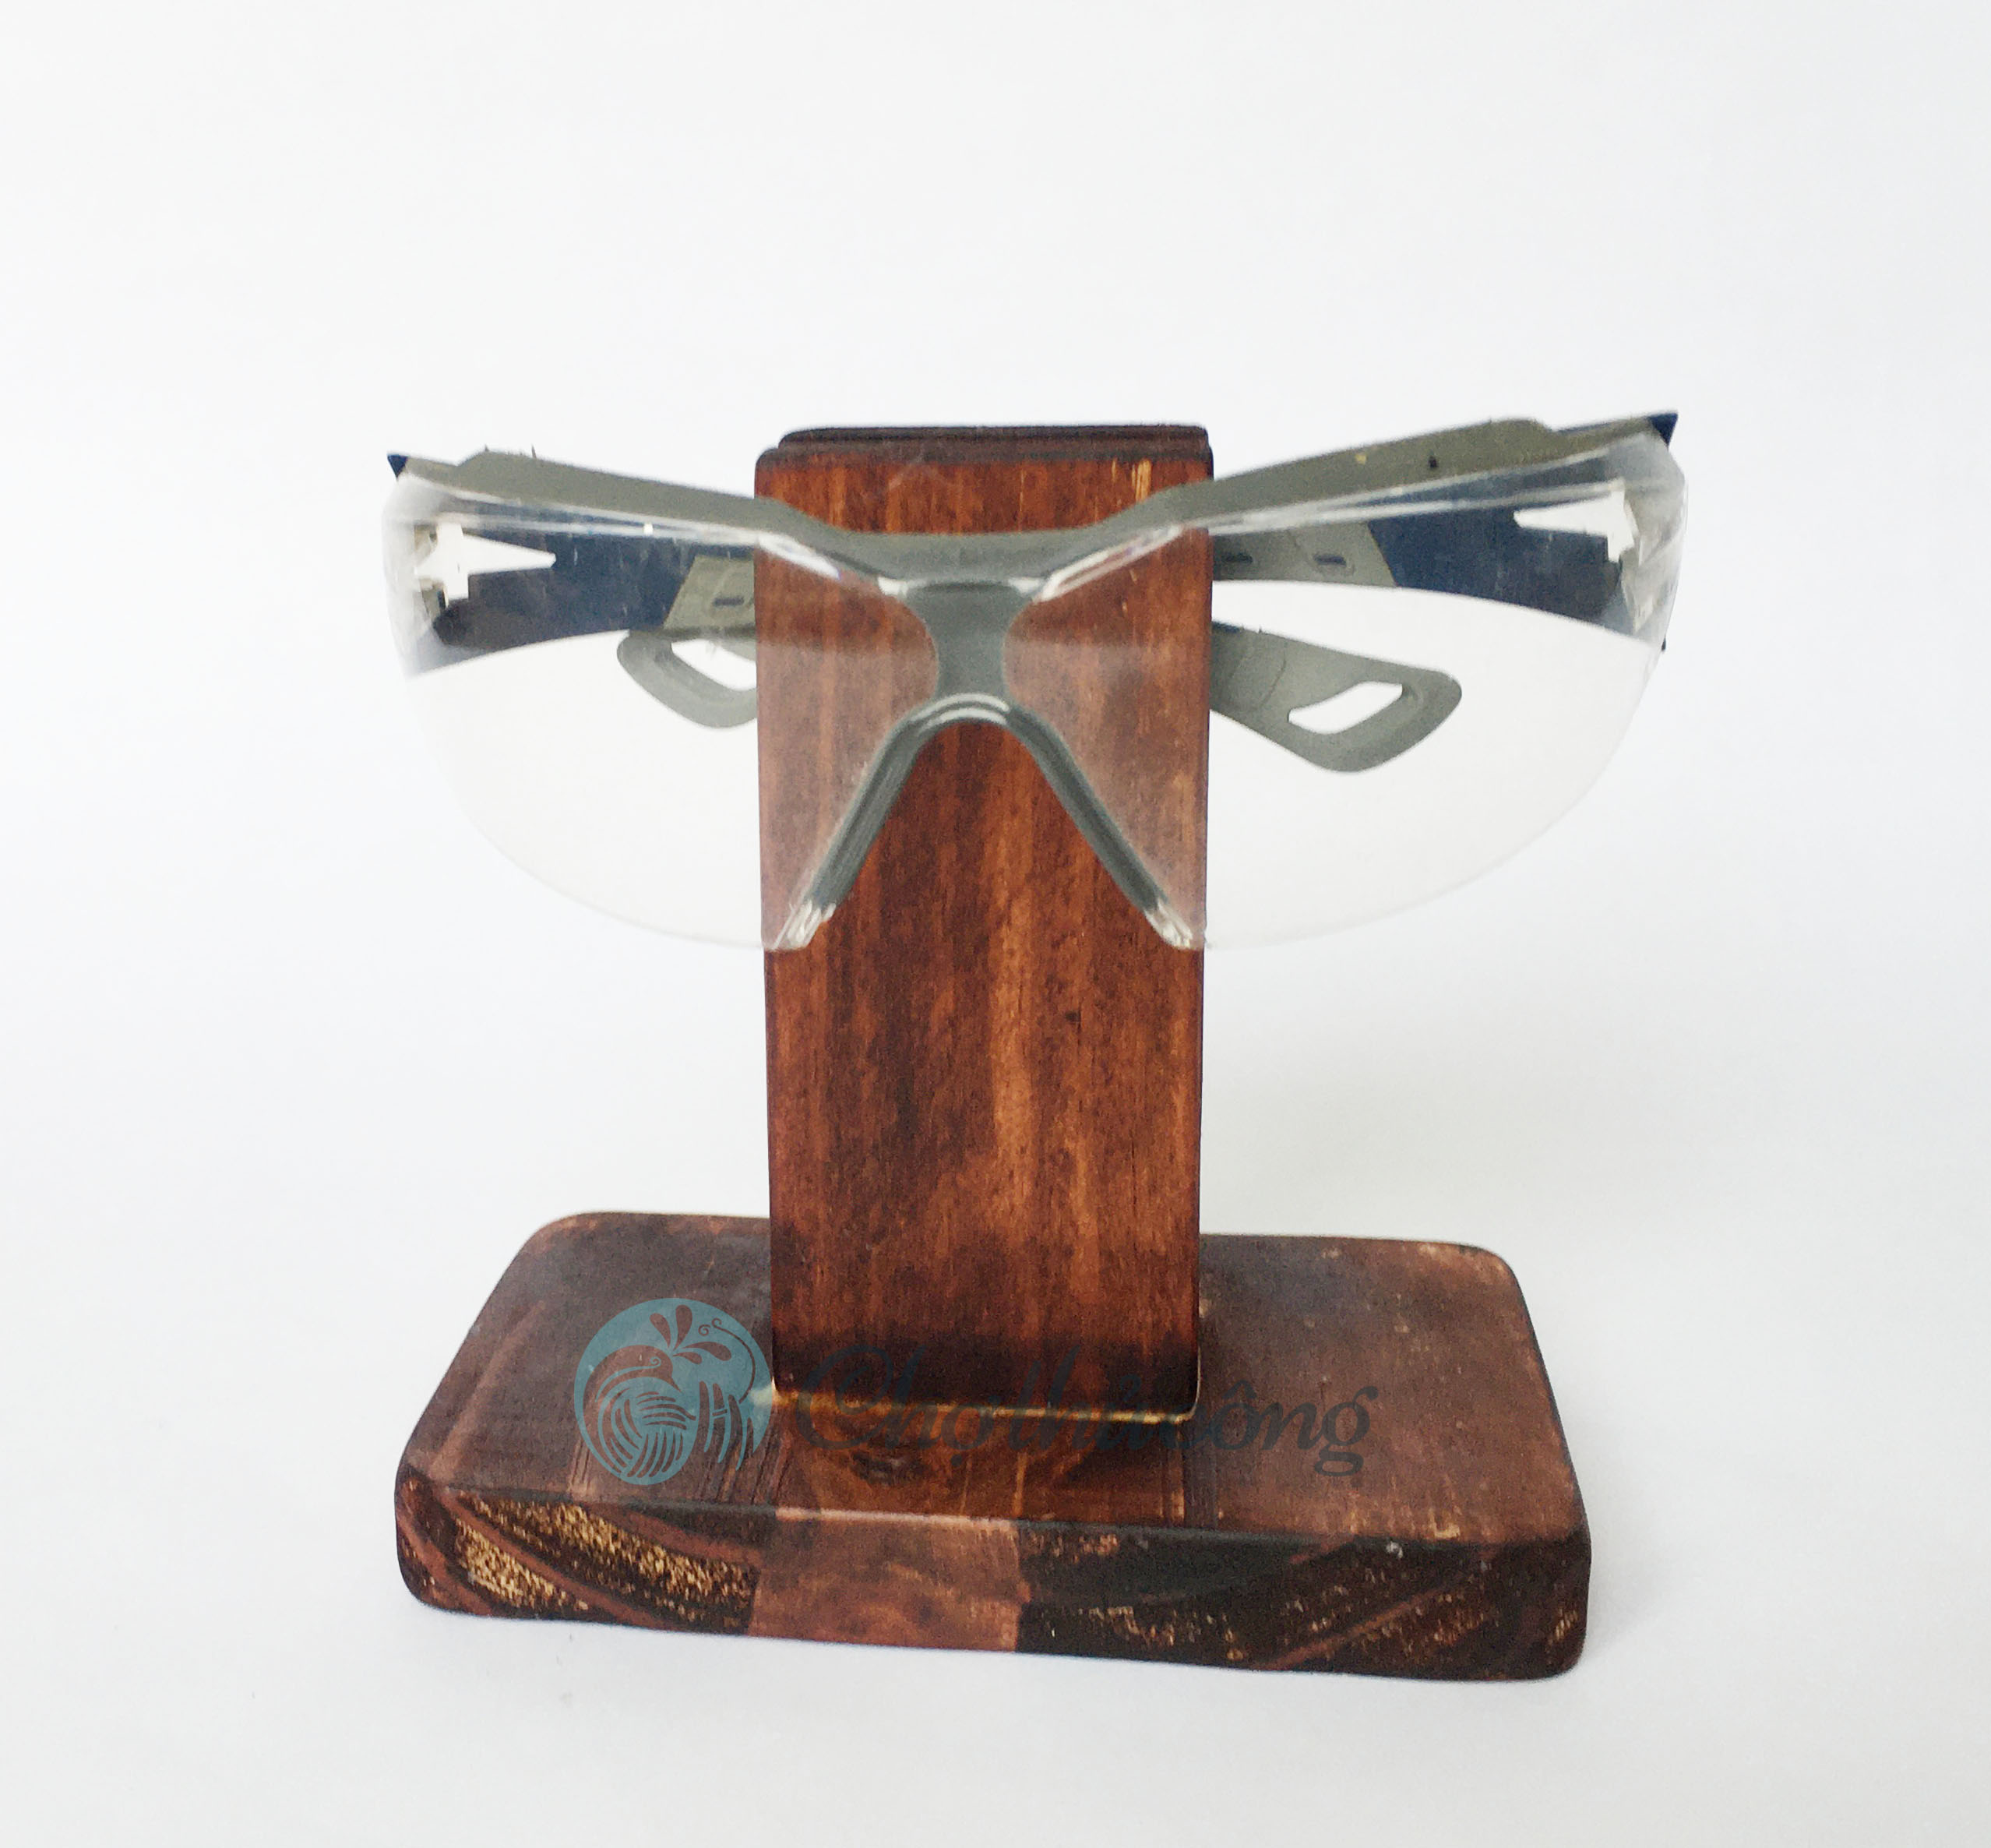 Kệ để mắt kính bằng gỗ thông tự nhiên, giá treo kính decor - kệ trưng mắt kính trang trí vintage, phụ kiện mắt kính cao cấp